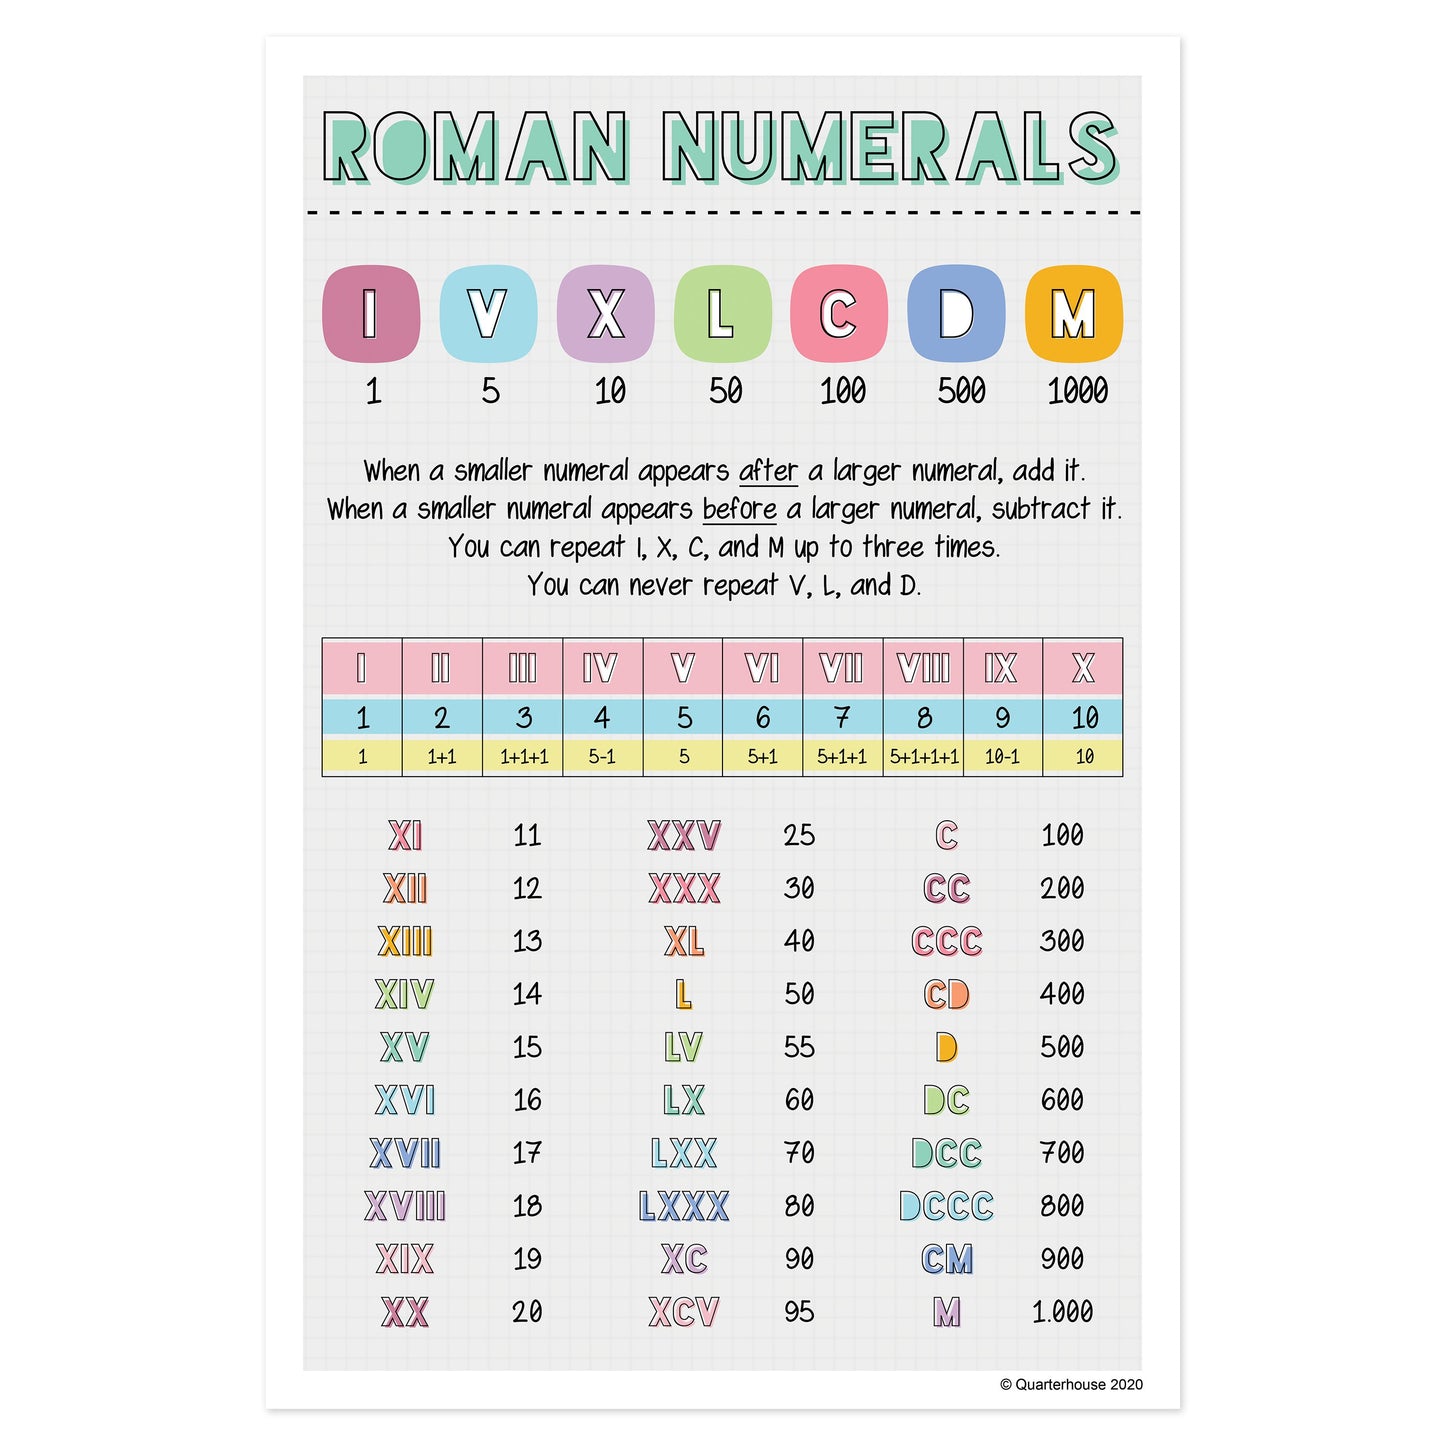 Quarterhouse Roman Numerals Poster, Math Classroom Materials for Teachers